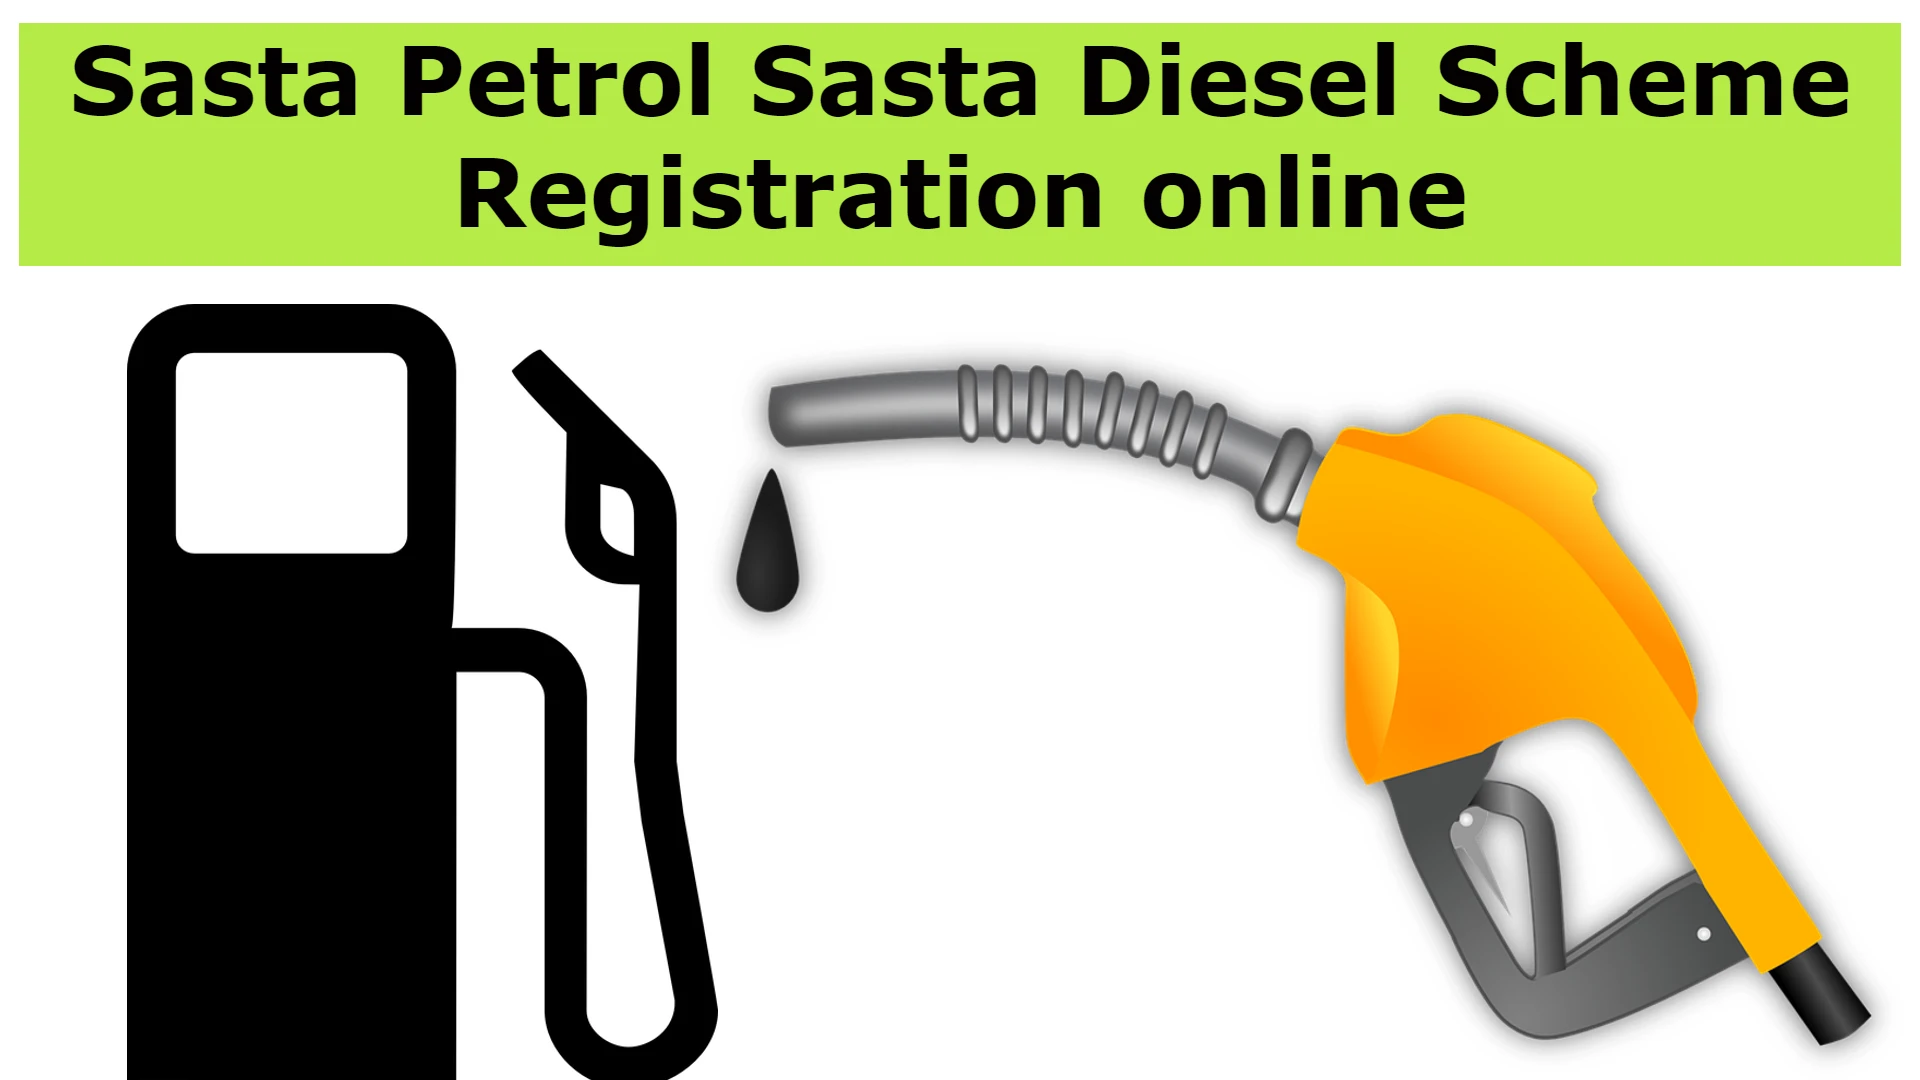 Sasta Petrol Sasta Diesel Scheme Registration online